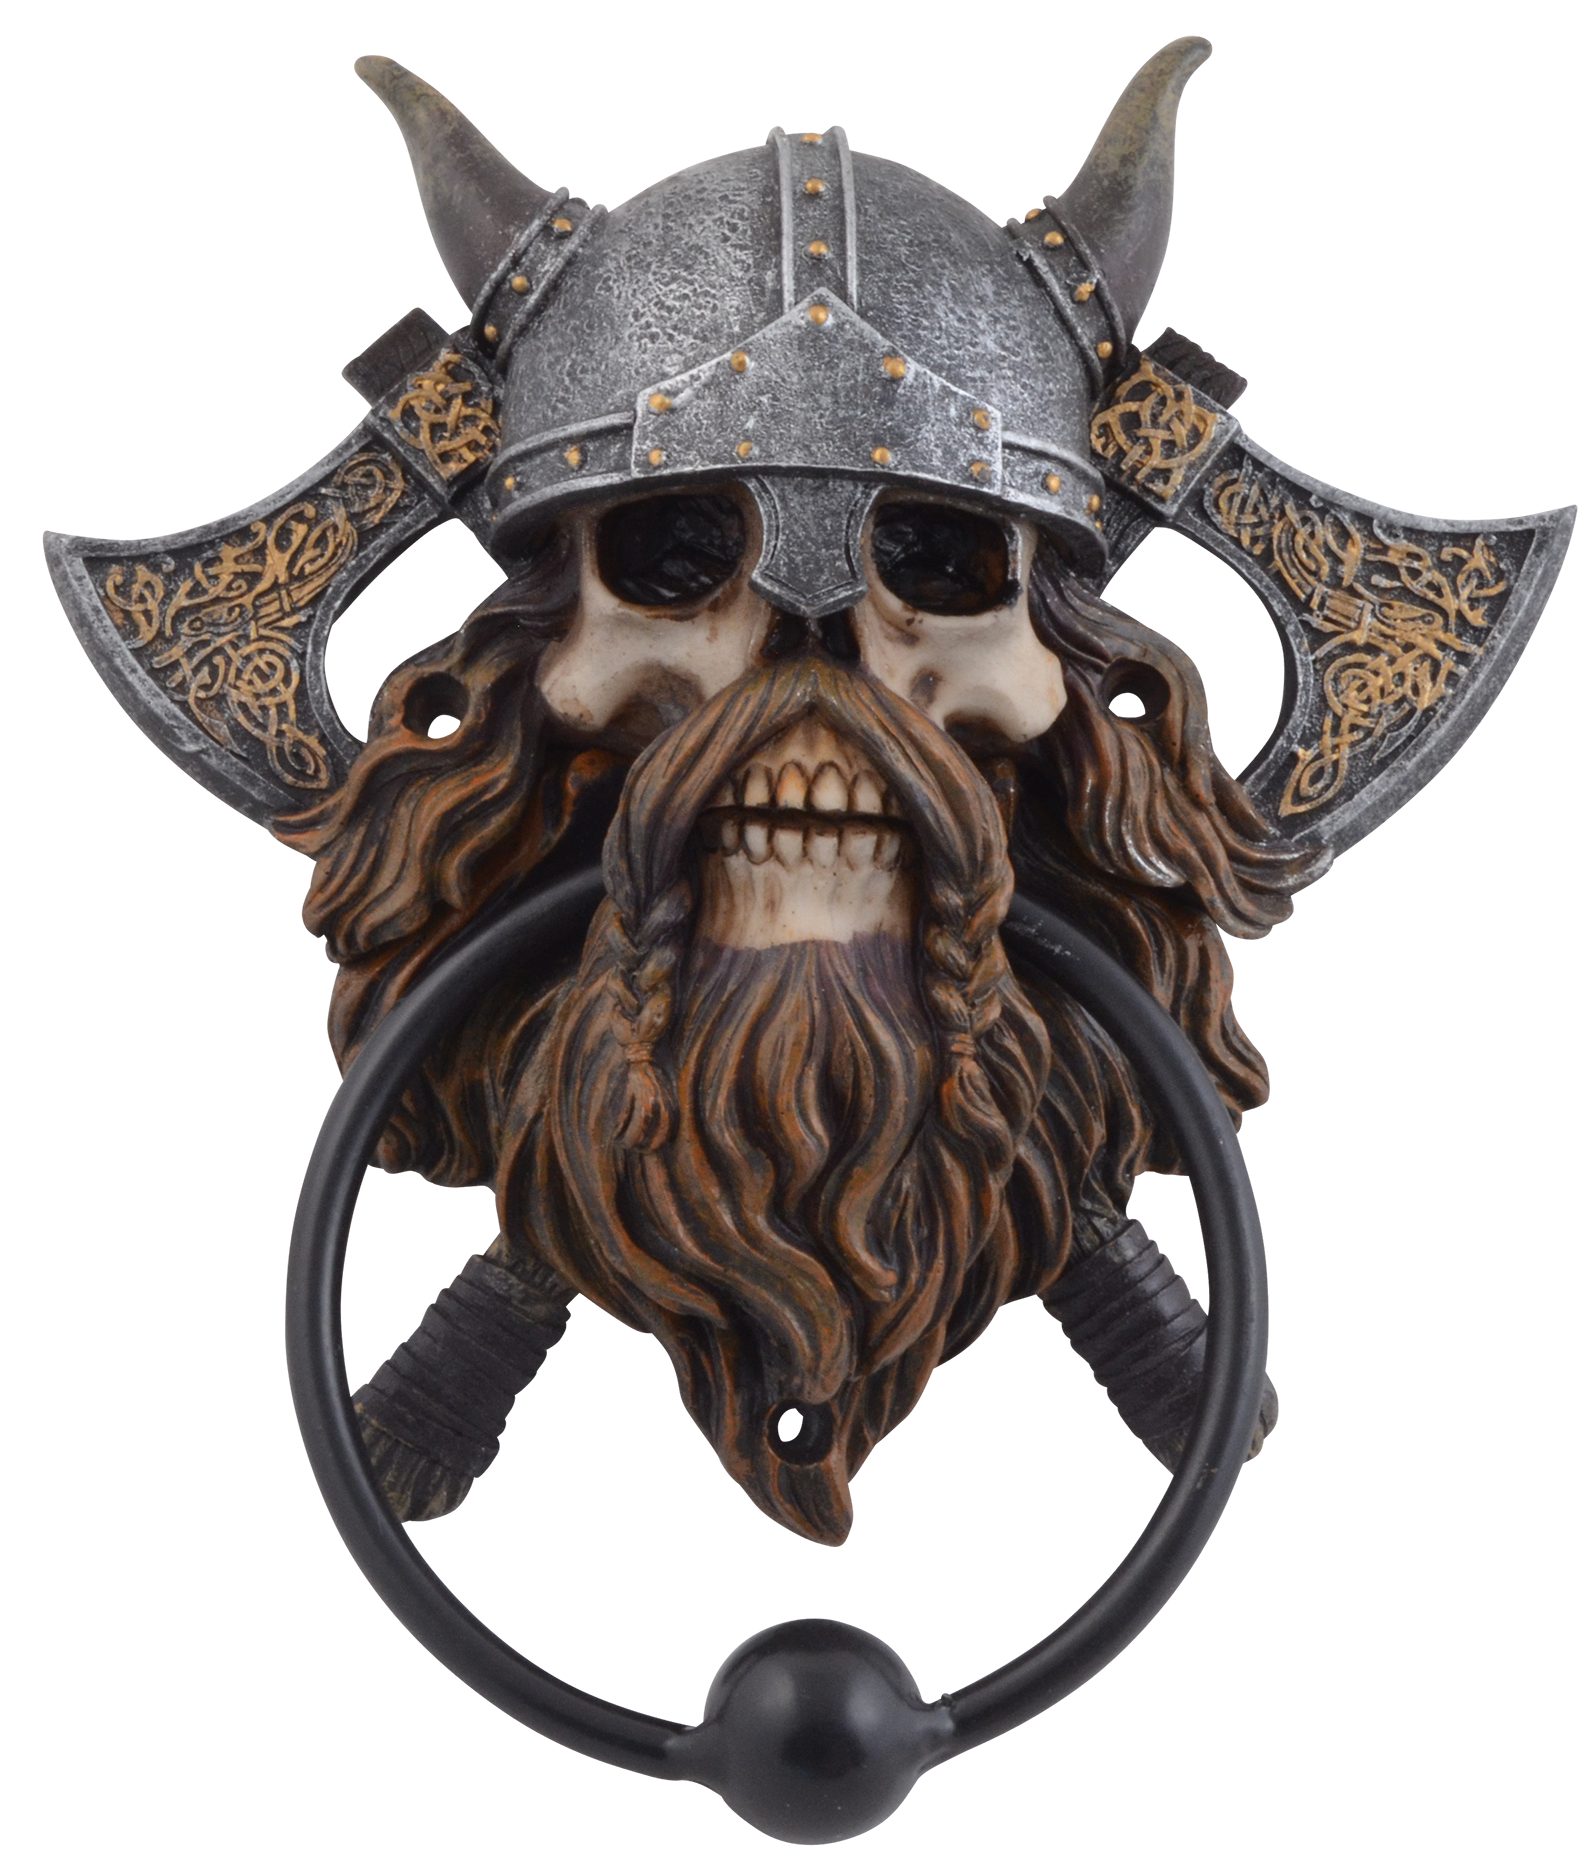 Vogler direct Gmbh Türbeschlag Türklopfer "Vikings never die", Größe: LxBxH ca. 15x5x18 cm, Klopfer aus Metall | Beschläge